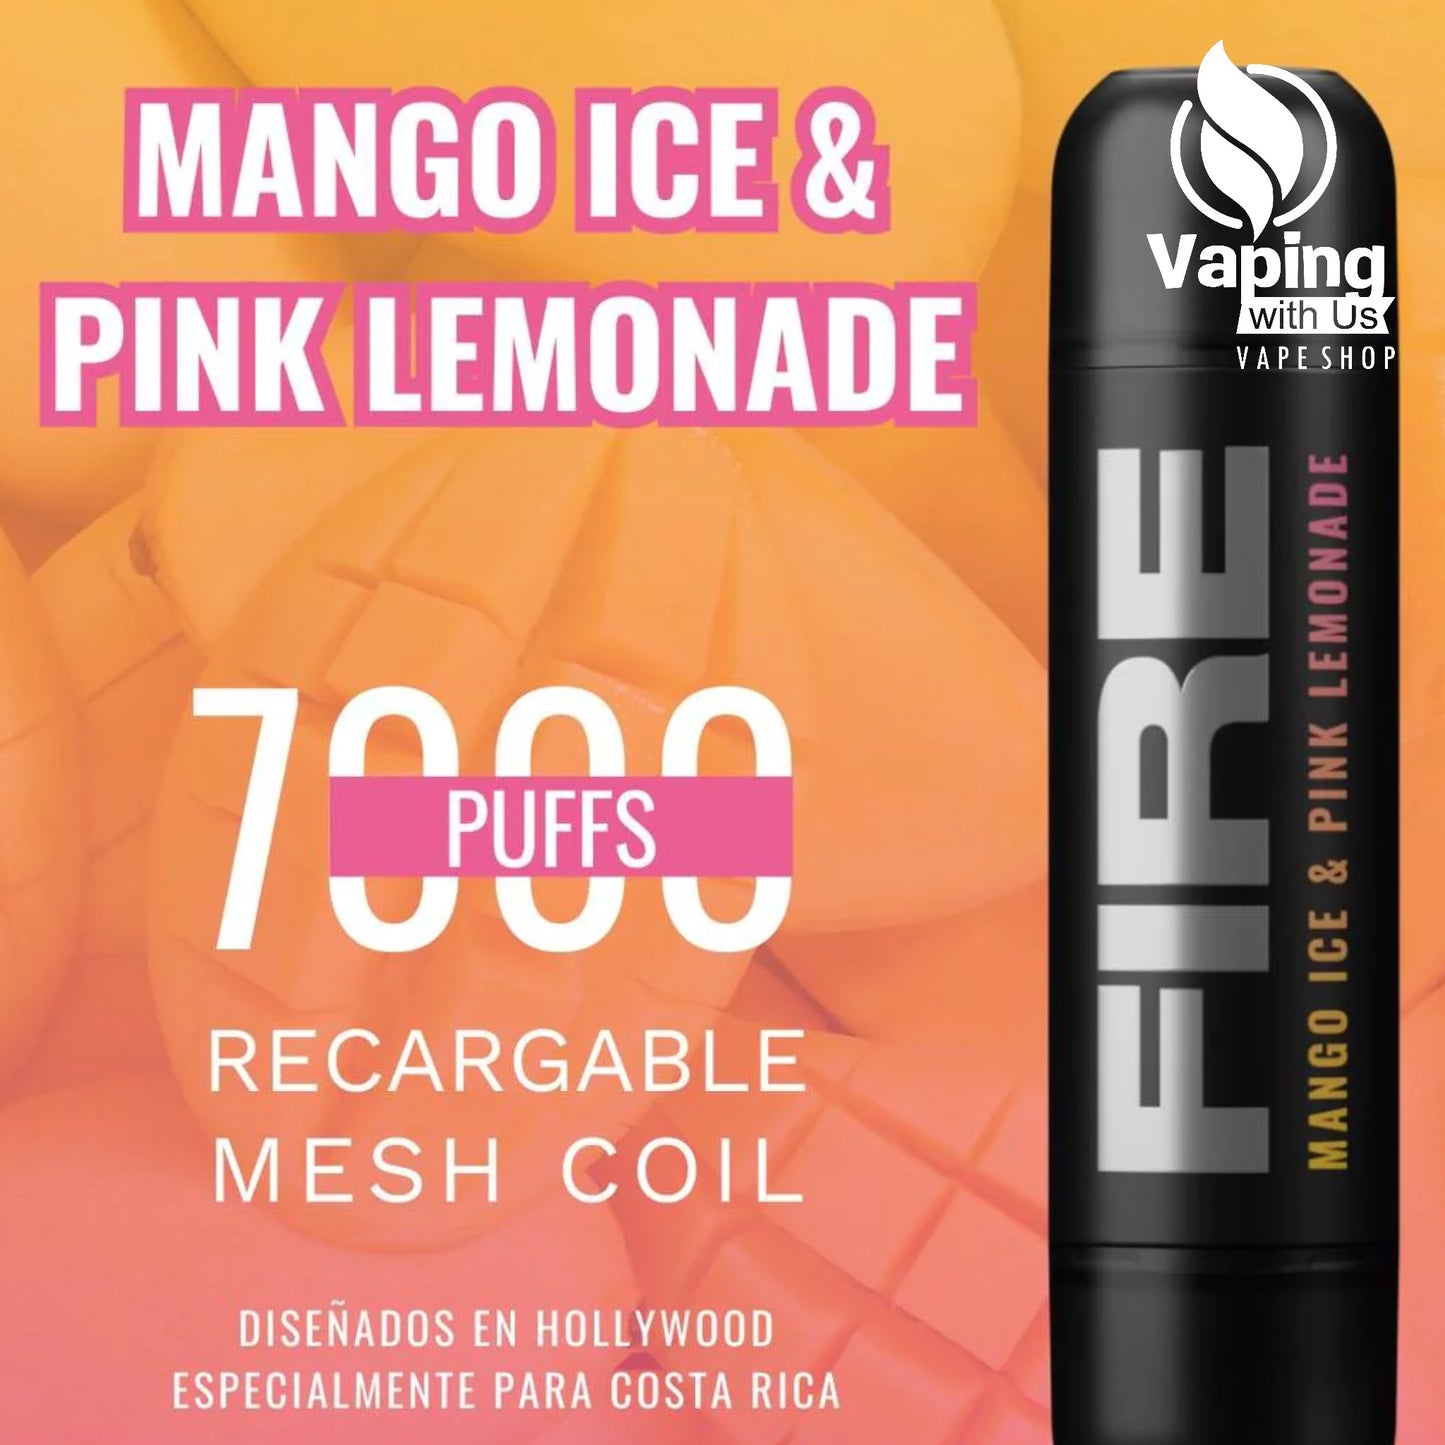 Mango Ice & Pink Lemonade - FIRE 7000 Puffs 5%/50mg